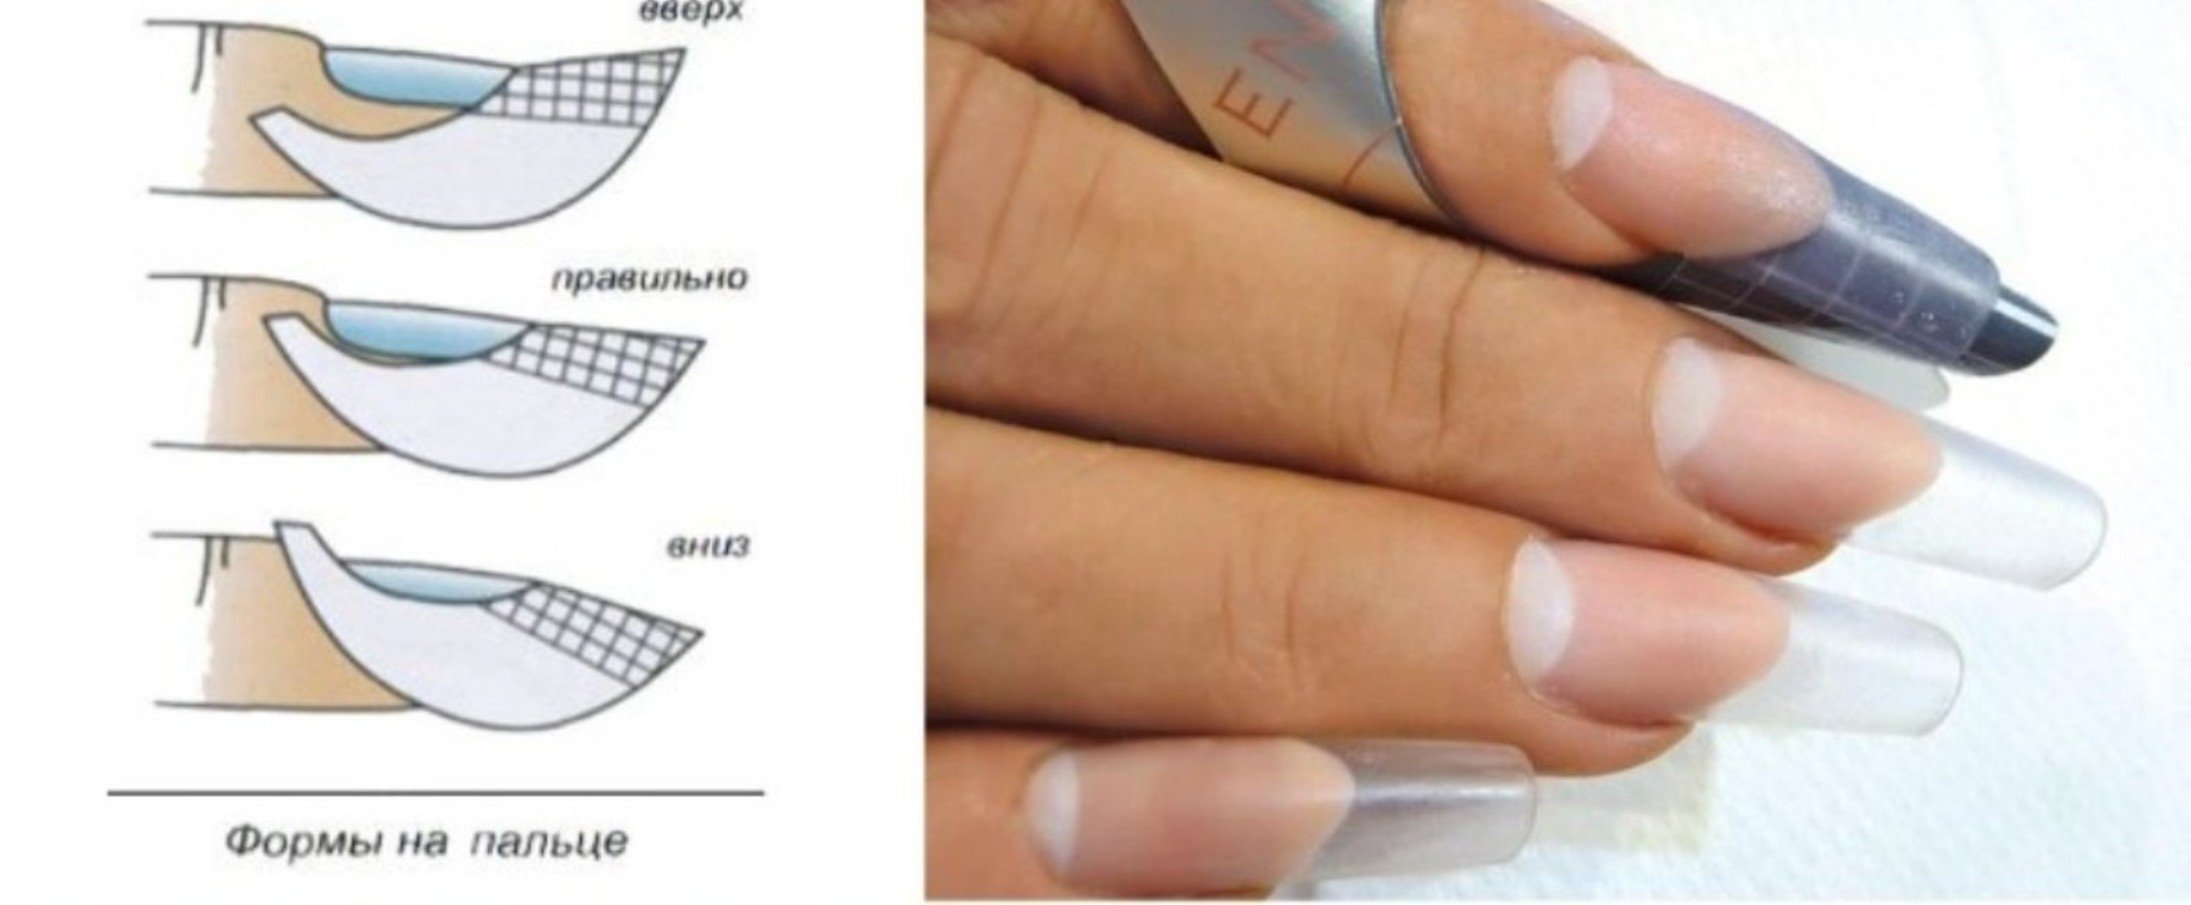 Однофазное наращивание. Форма ногтей миндаль сбоку. Правильная форма нарощенного ногтя миндаль сбоку. Форма ногтей миндаль вид сбоку. Нарощенные ногти сбоку вид форма миндаль.